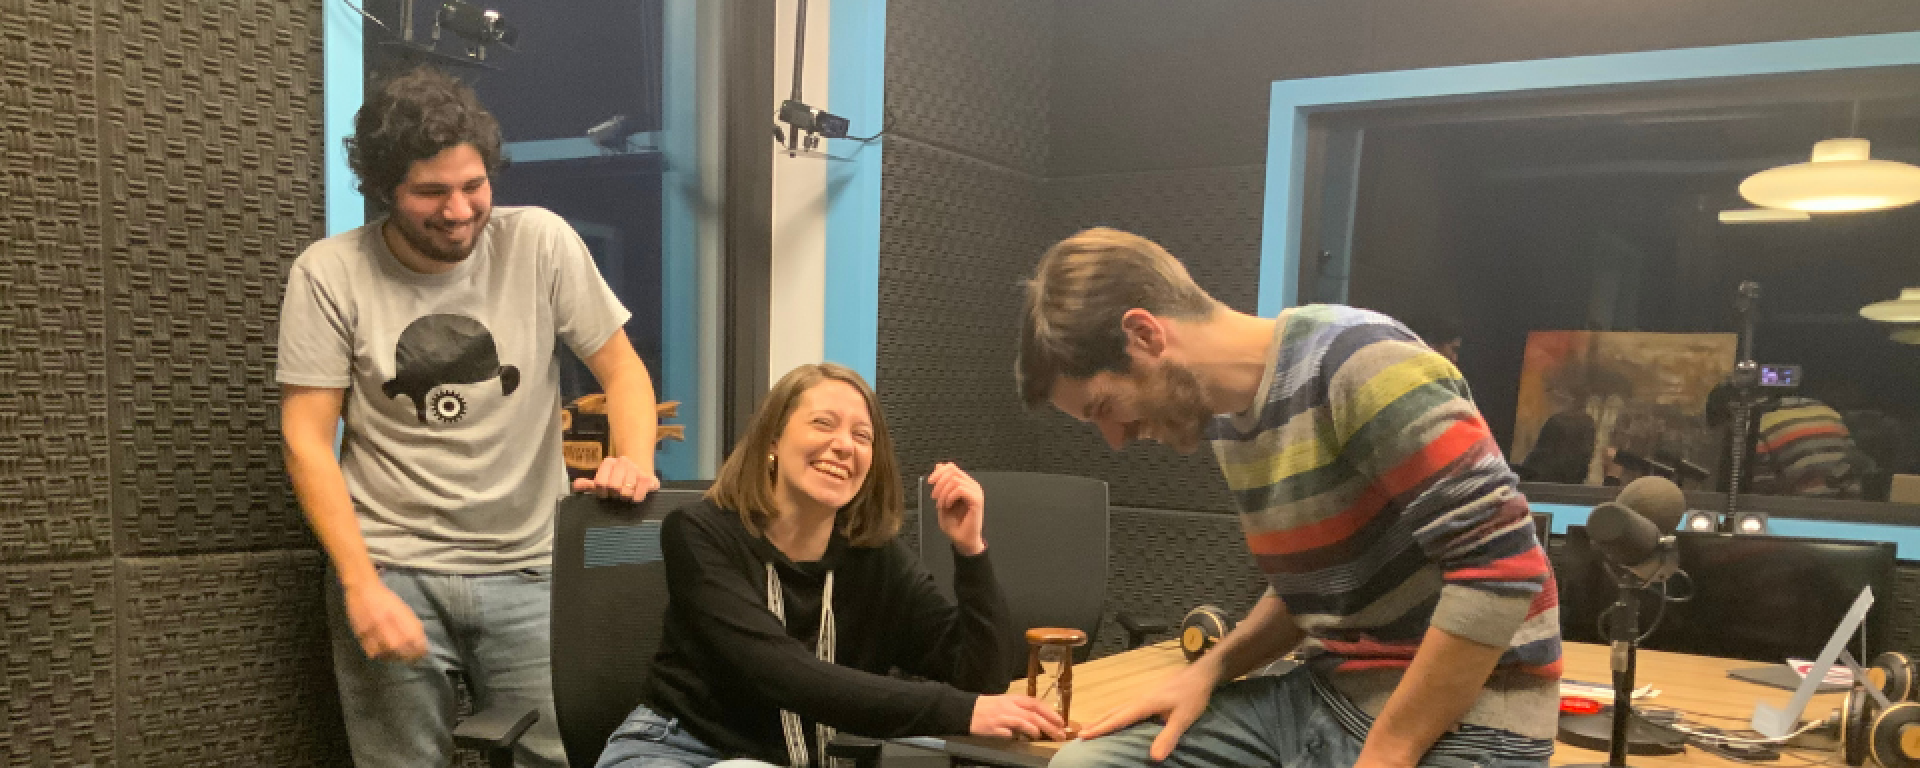 Los tres graduados de la UM ríen dentro de un estudio de radio.